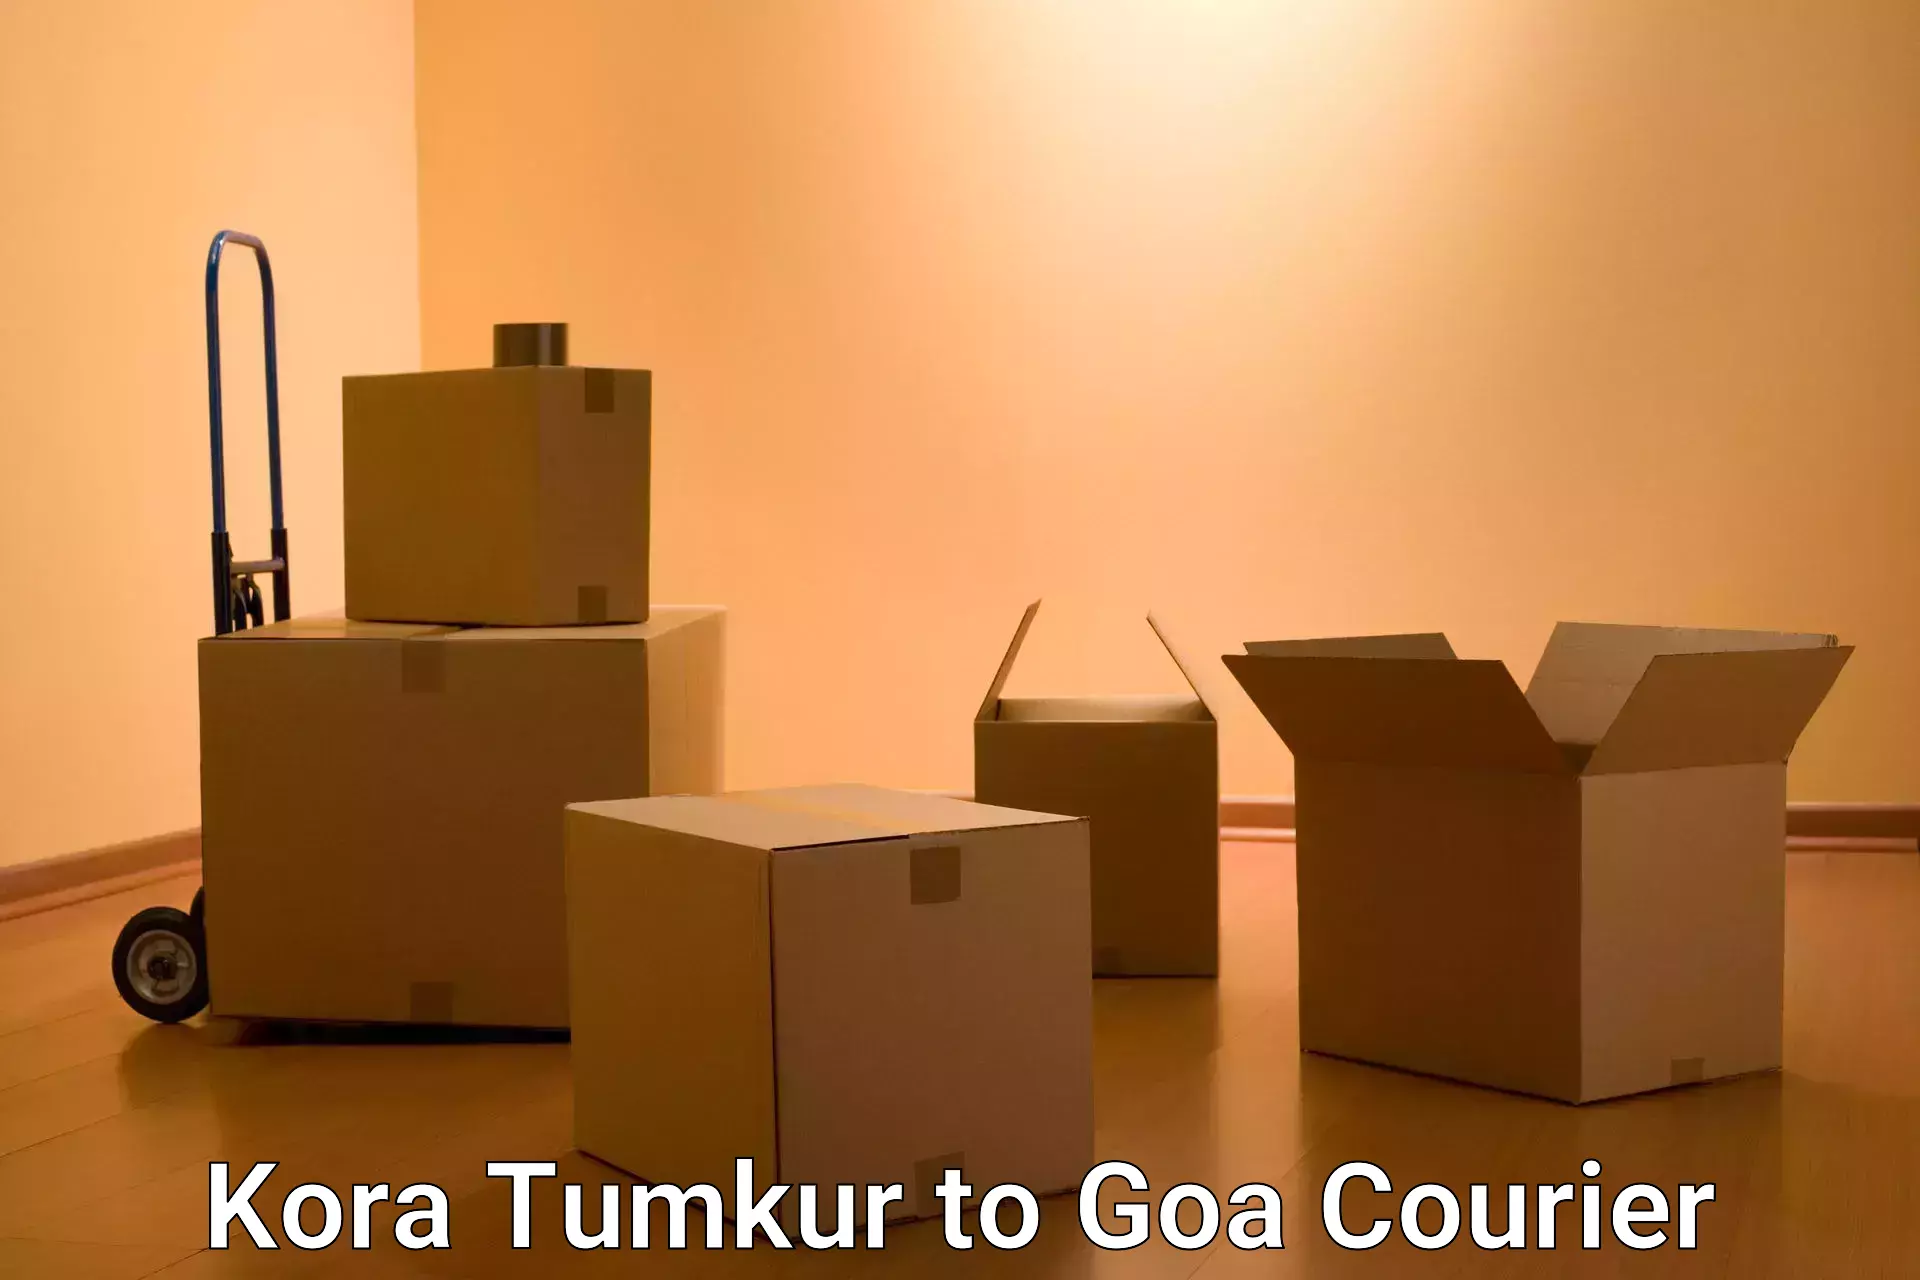 Courier insurance Kora Tumkur to Vasco da Gama